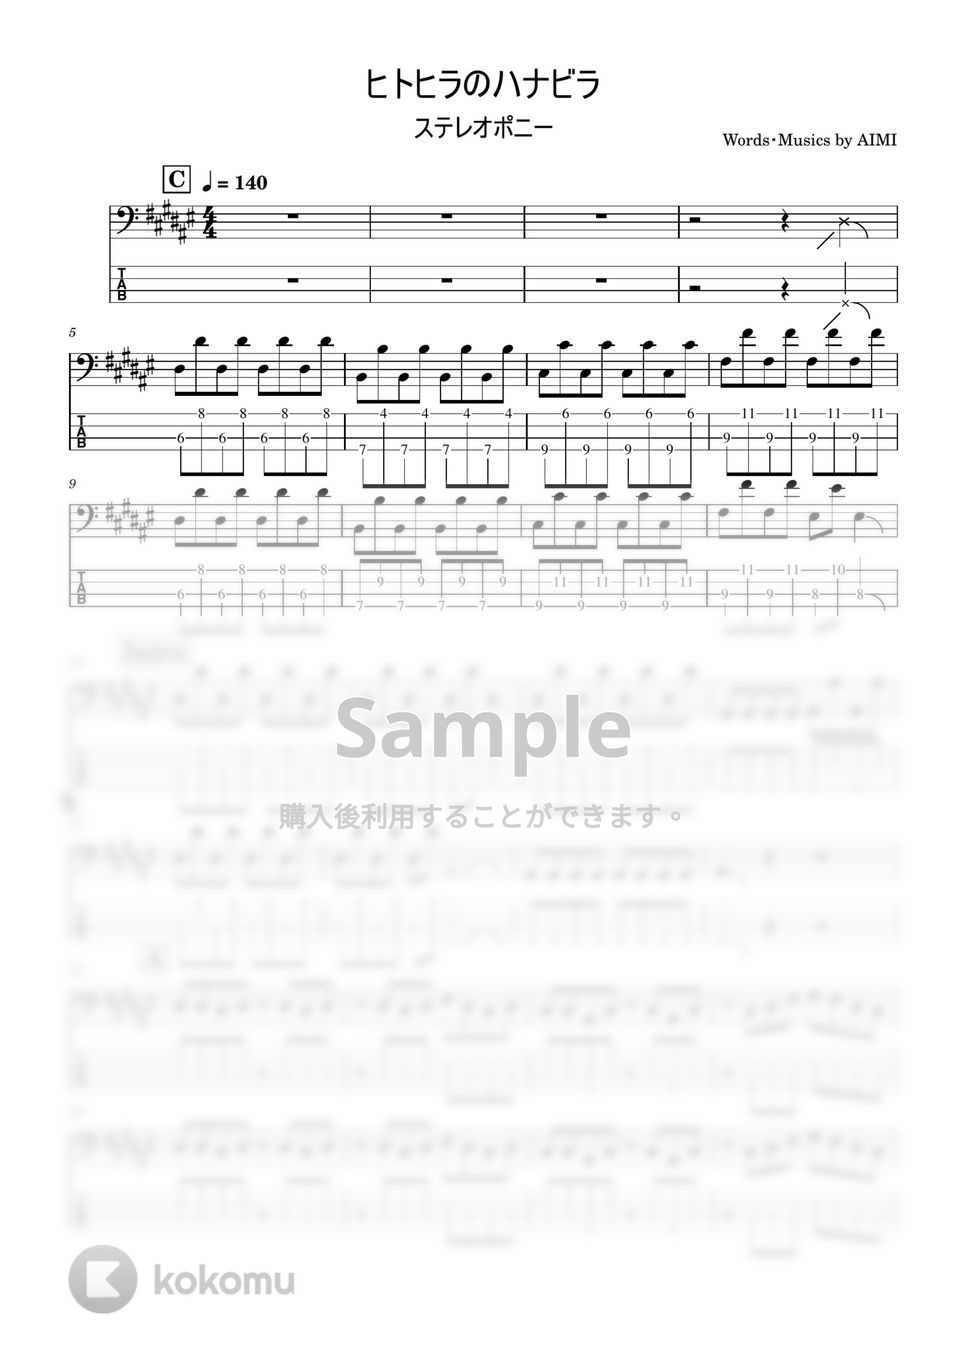 ステレオポニー - ヒトヒラのハナビラ (Bass tab譜) by Zeo